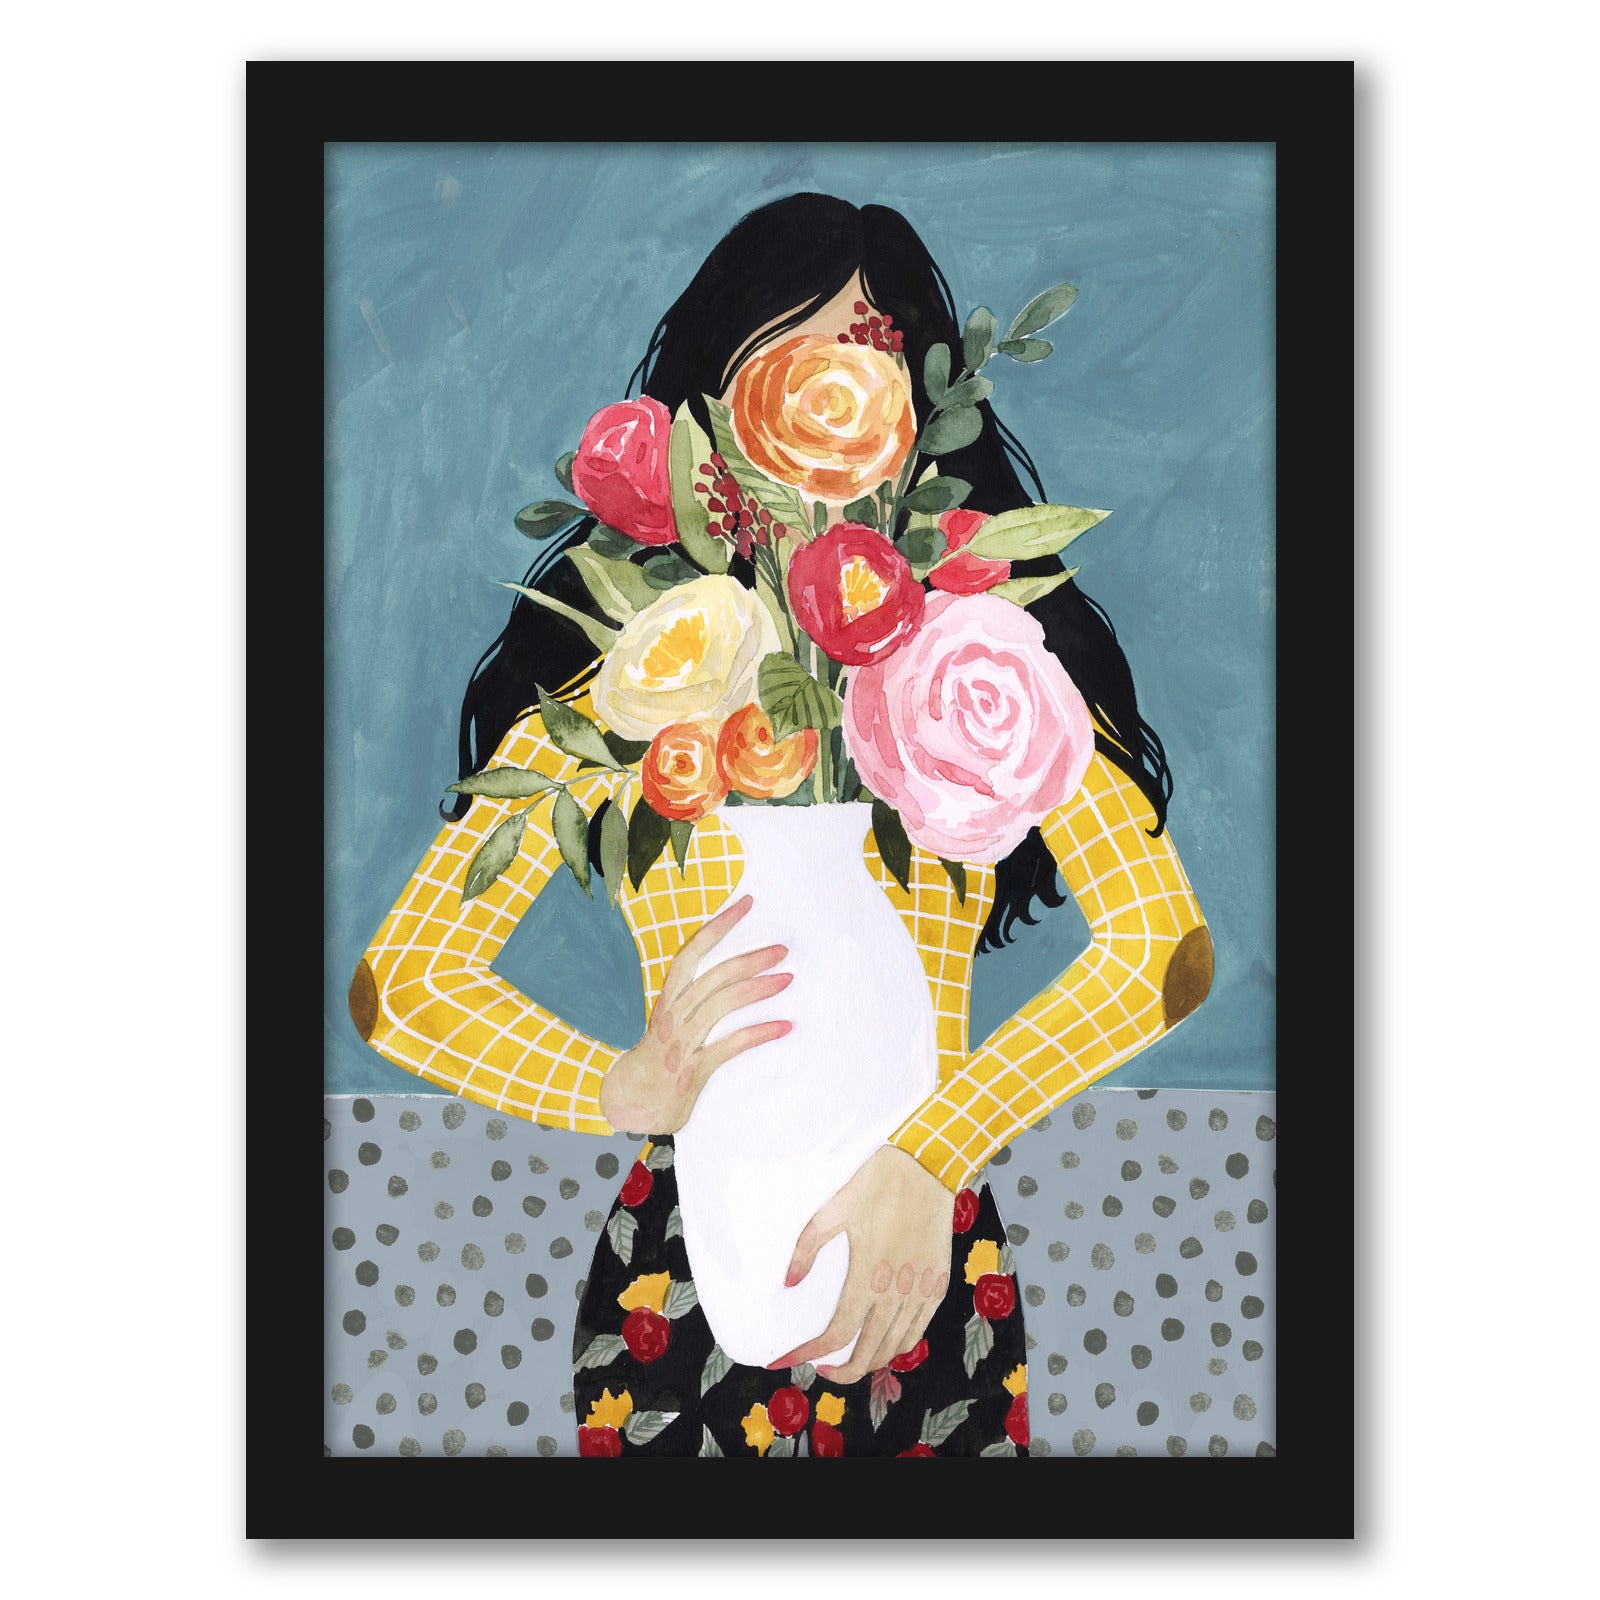 Flower Vase Girl II by Grace Popp by World Art Group - Black Framed Print - Wall Art - Americanflat